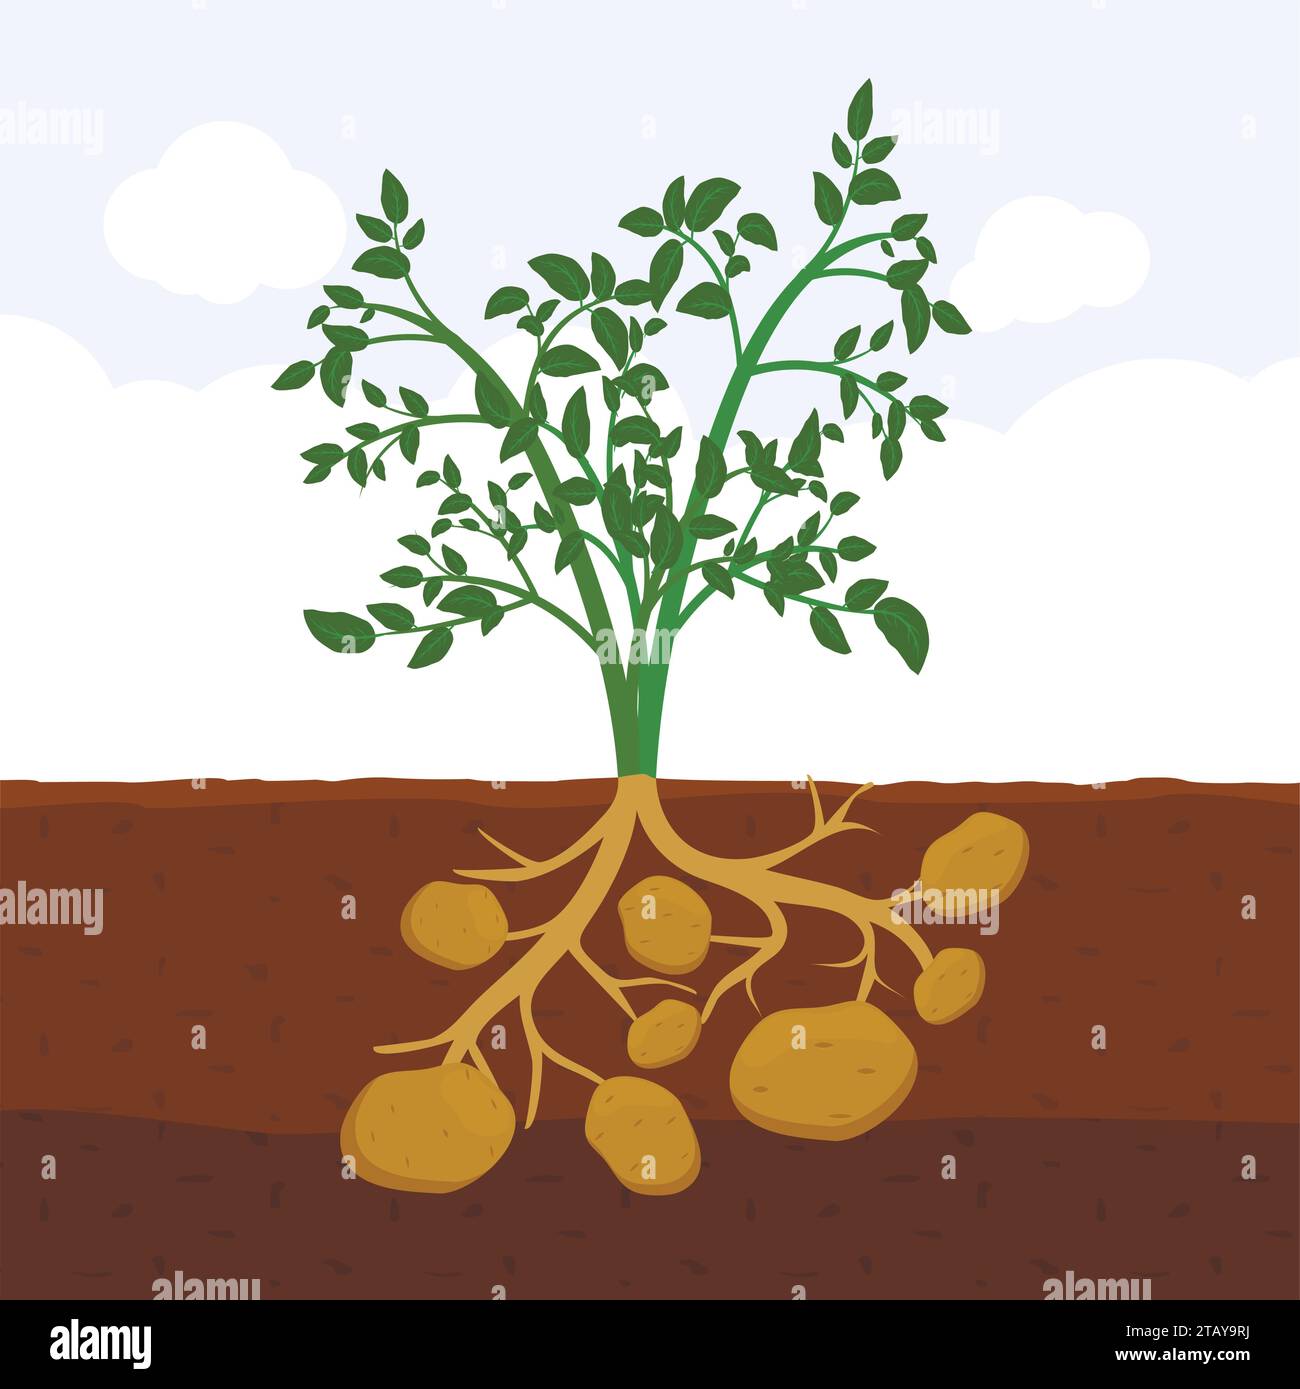 Kartoffel mit Blättern und Wurzeln im Boden, frisches organisches Gemüsegarten Pflanze, die unterirdisch wächst, Cartoon flache Vektor-Illustration. Stock Vektor